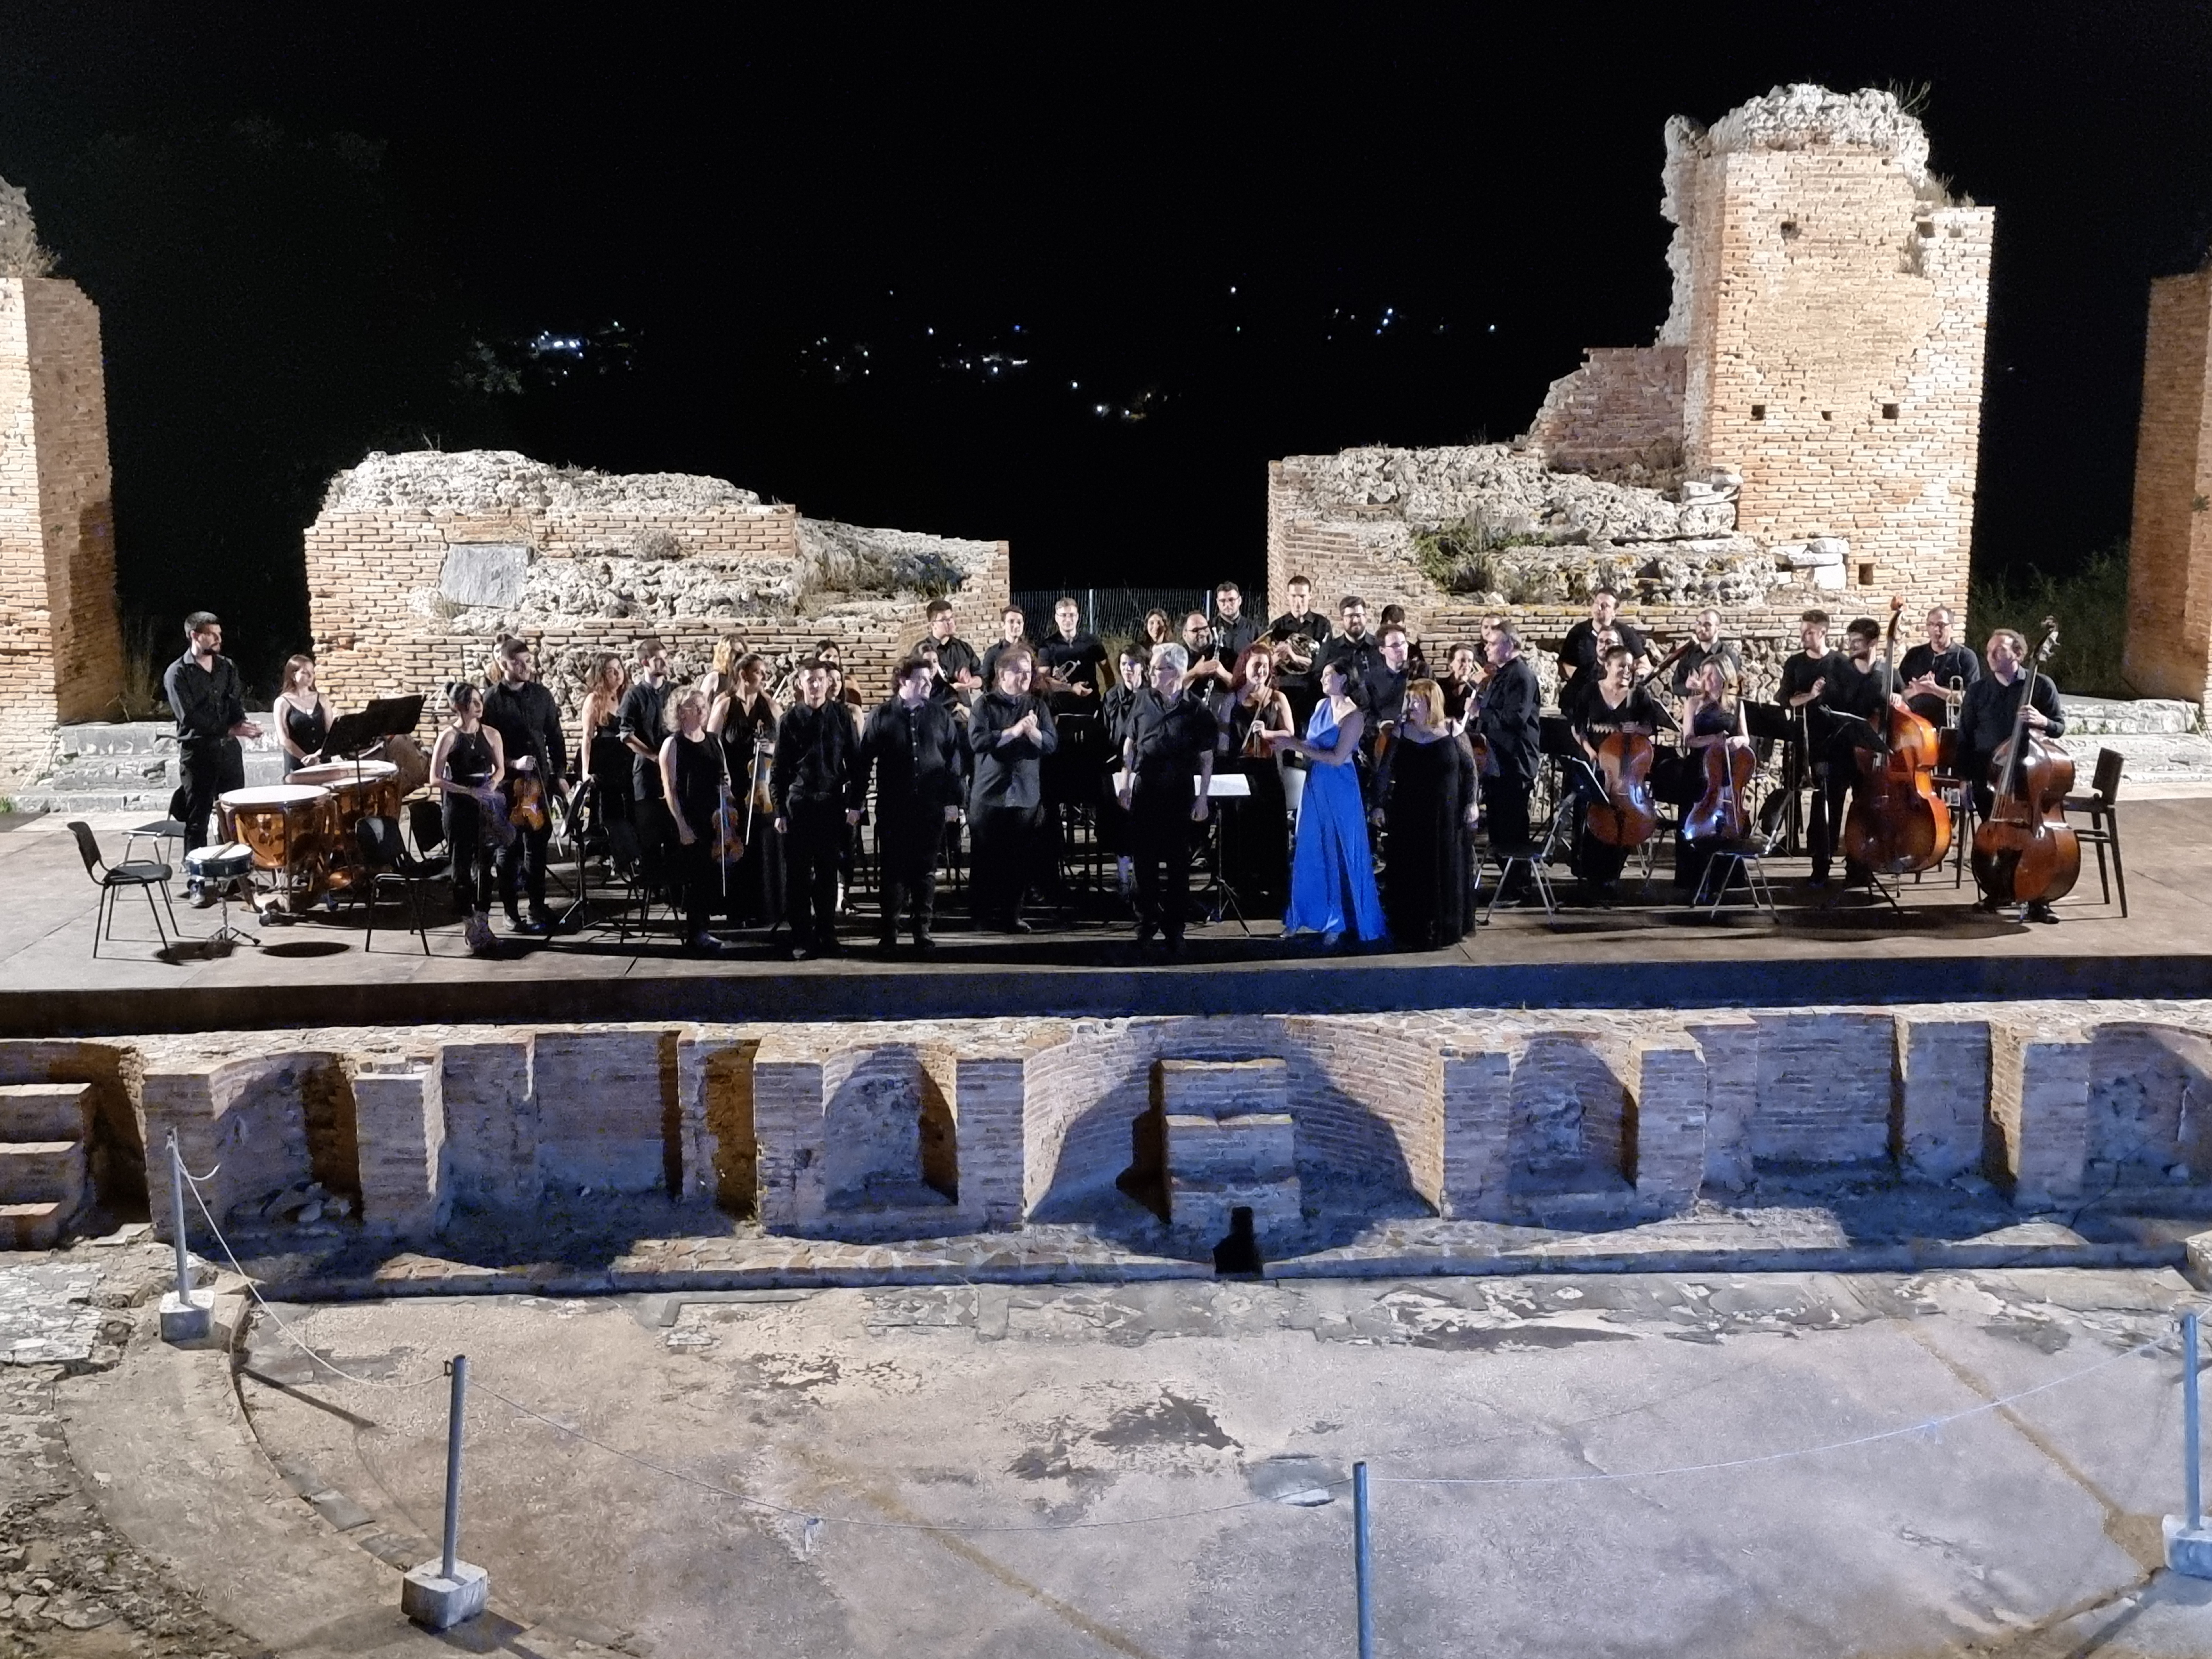 Διήμερο μουσικών εκδηλώσεων με έργα Ελλήνων και Ιταλών Μουσουργών, σε παγκόσμια πρώτη εκτέλεση, με στόχο την ανάδειξη της διαπολιτισμικής παράδοσης των περιοχών της Άρτας και της Απουλίας